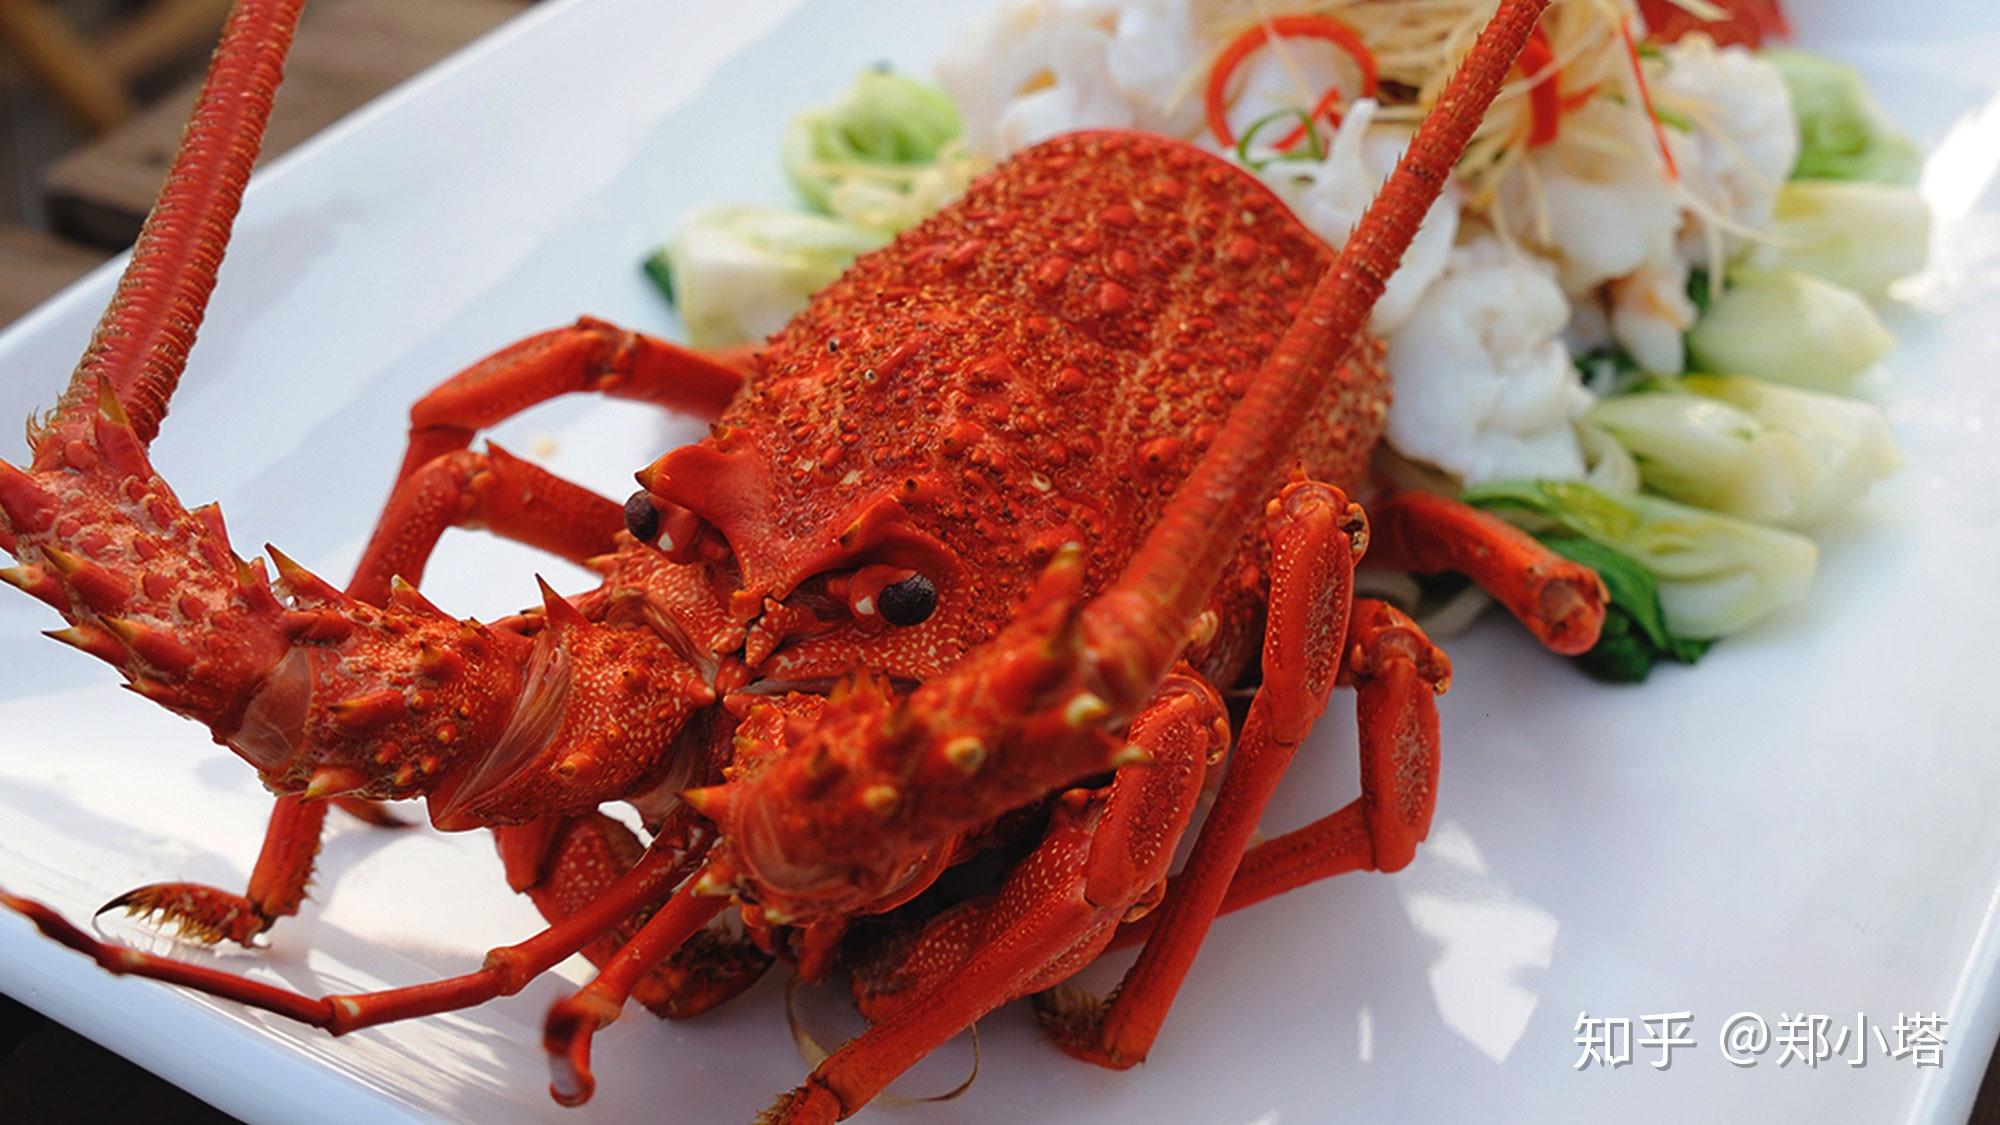 澳洲大龙虾素材-澳洲大龙虾图片-澳洲大龙虾素材图片下载-觅知网